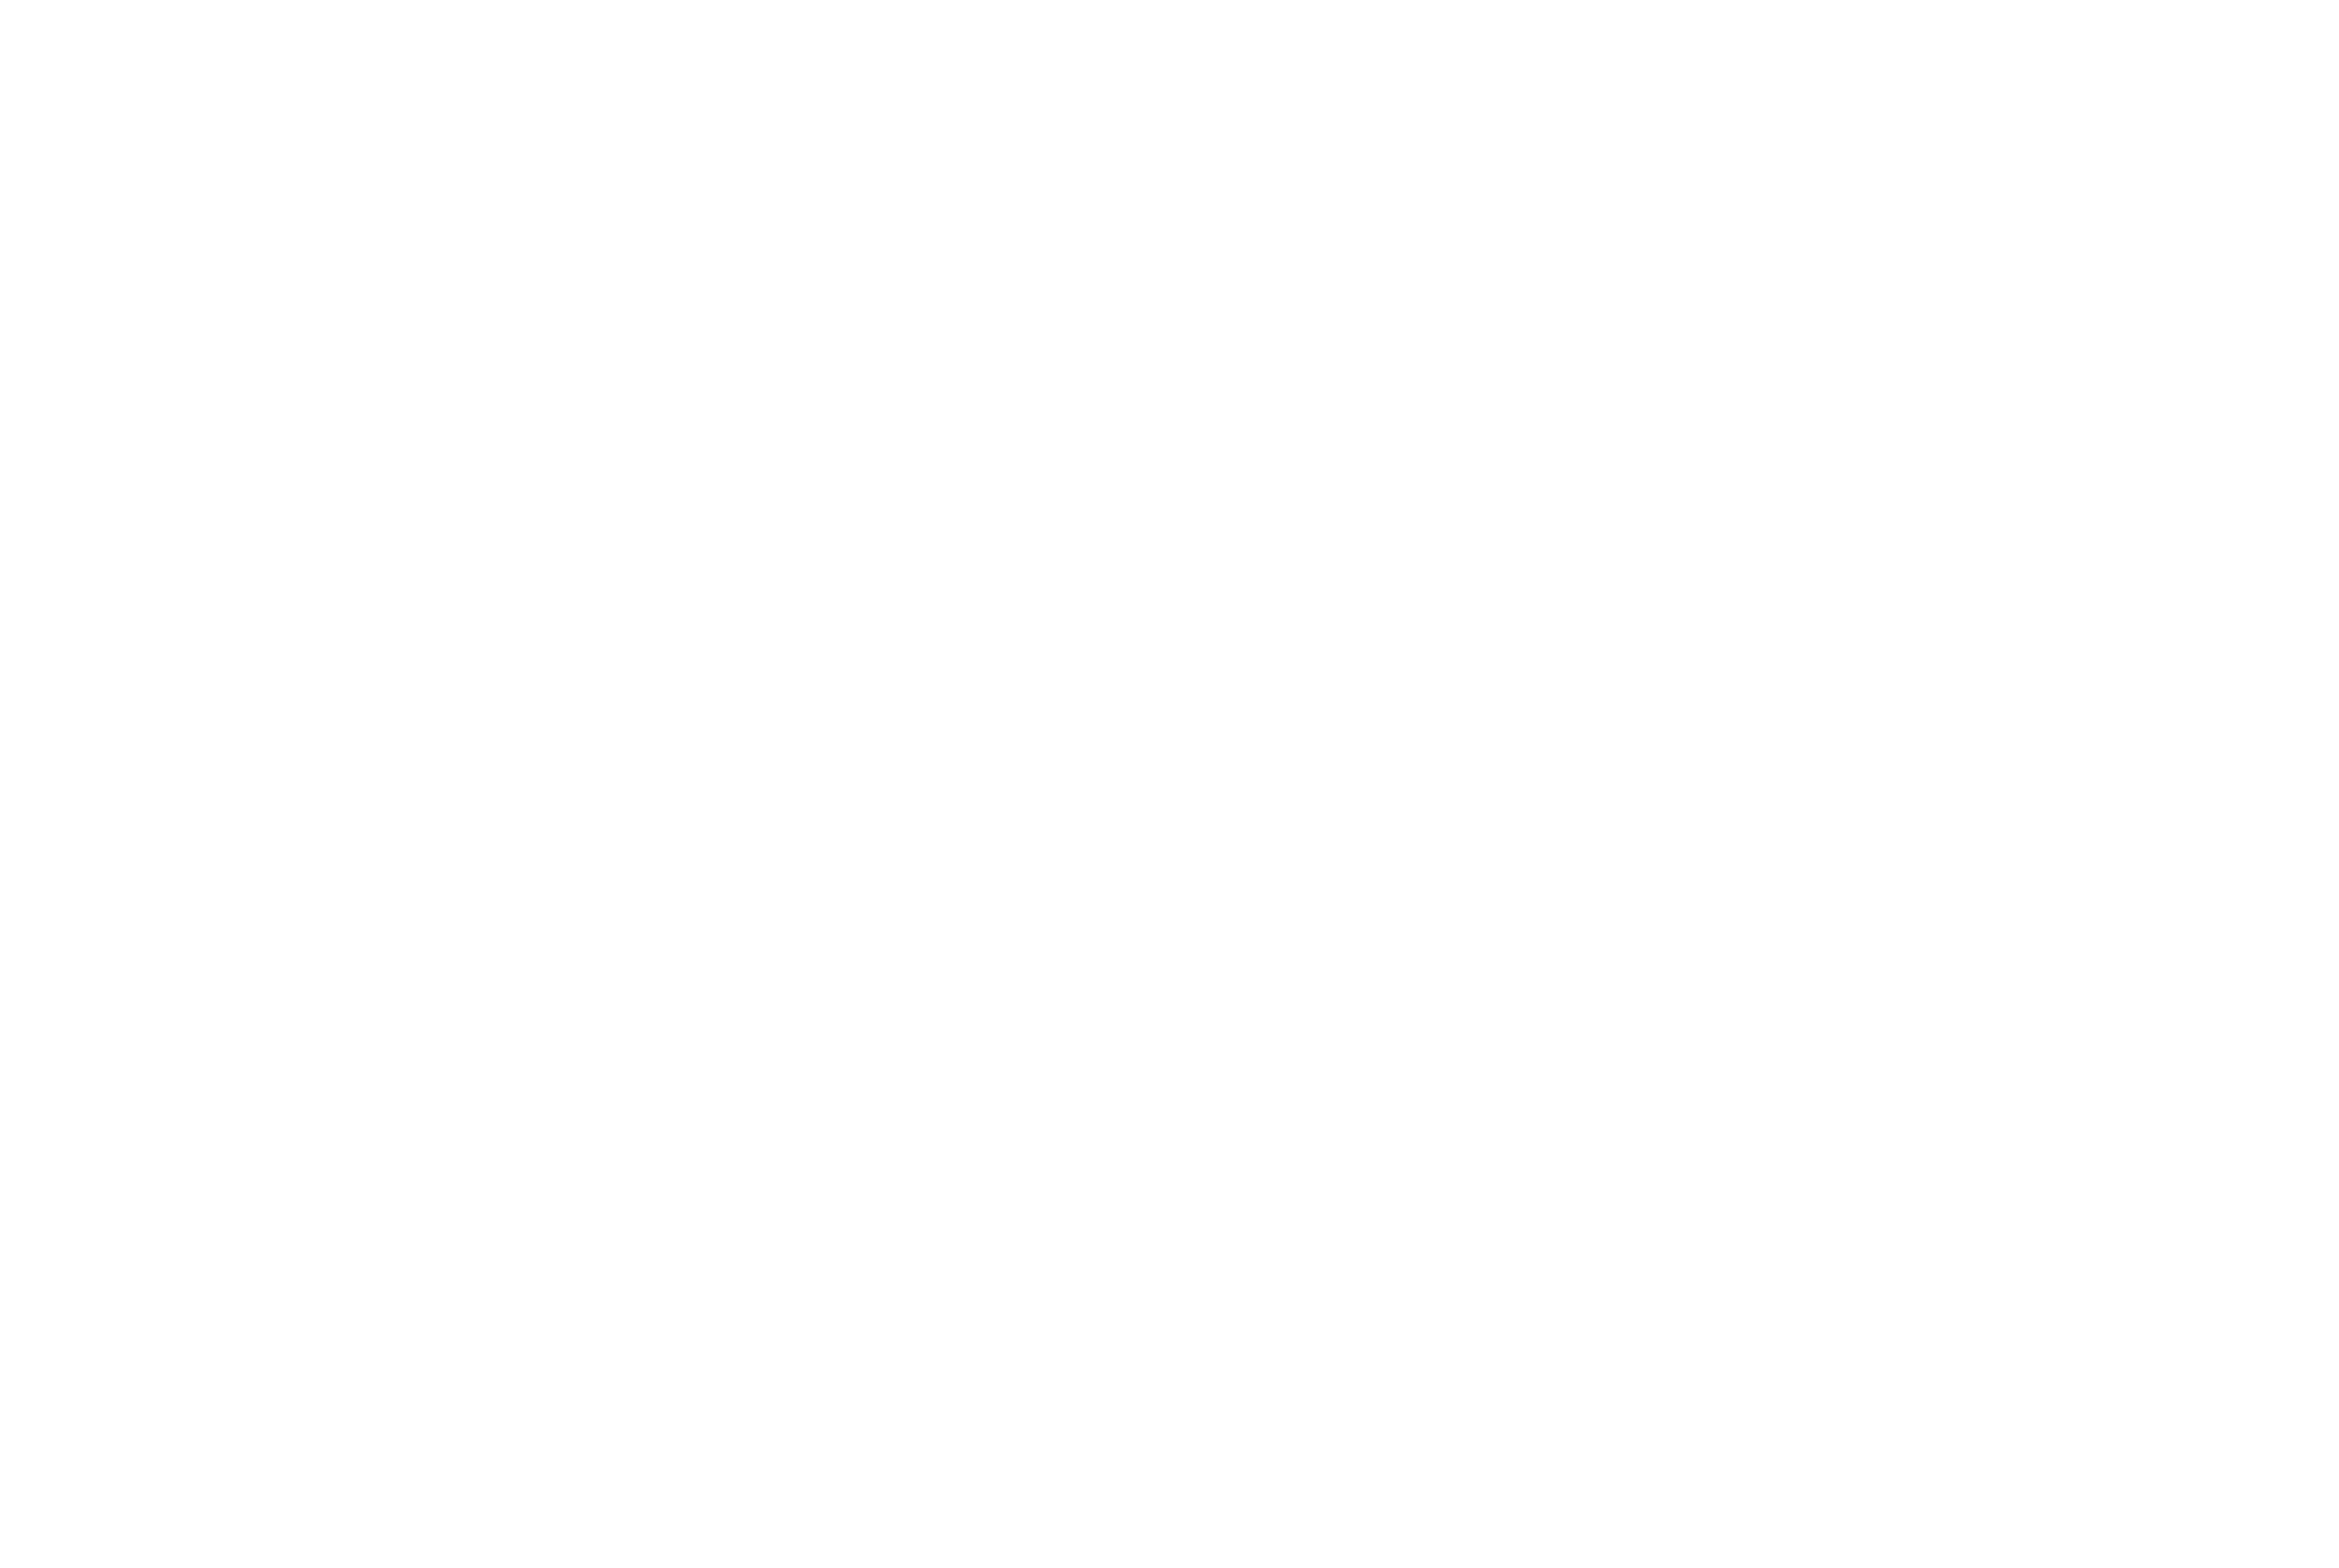 AVICOM' - Agence de communication, de publicité et digitale sur Lyon 6